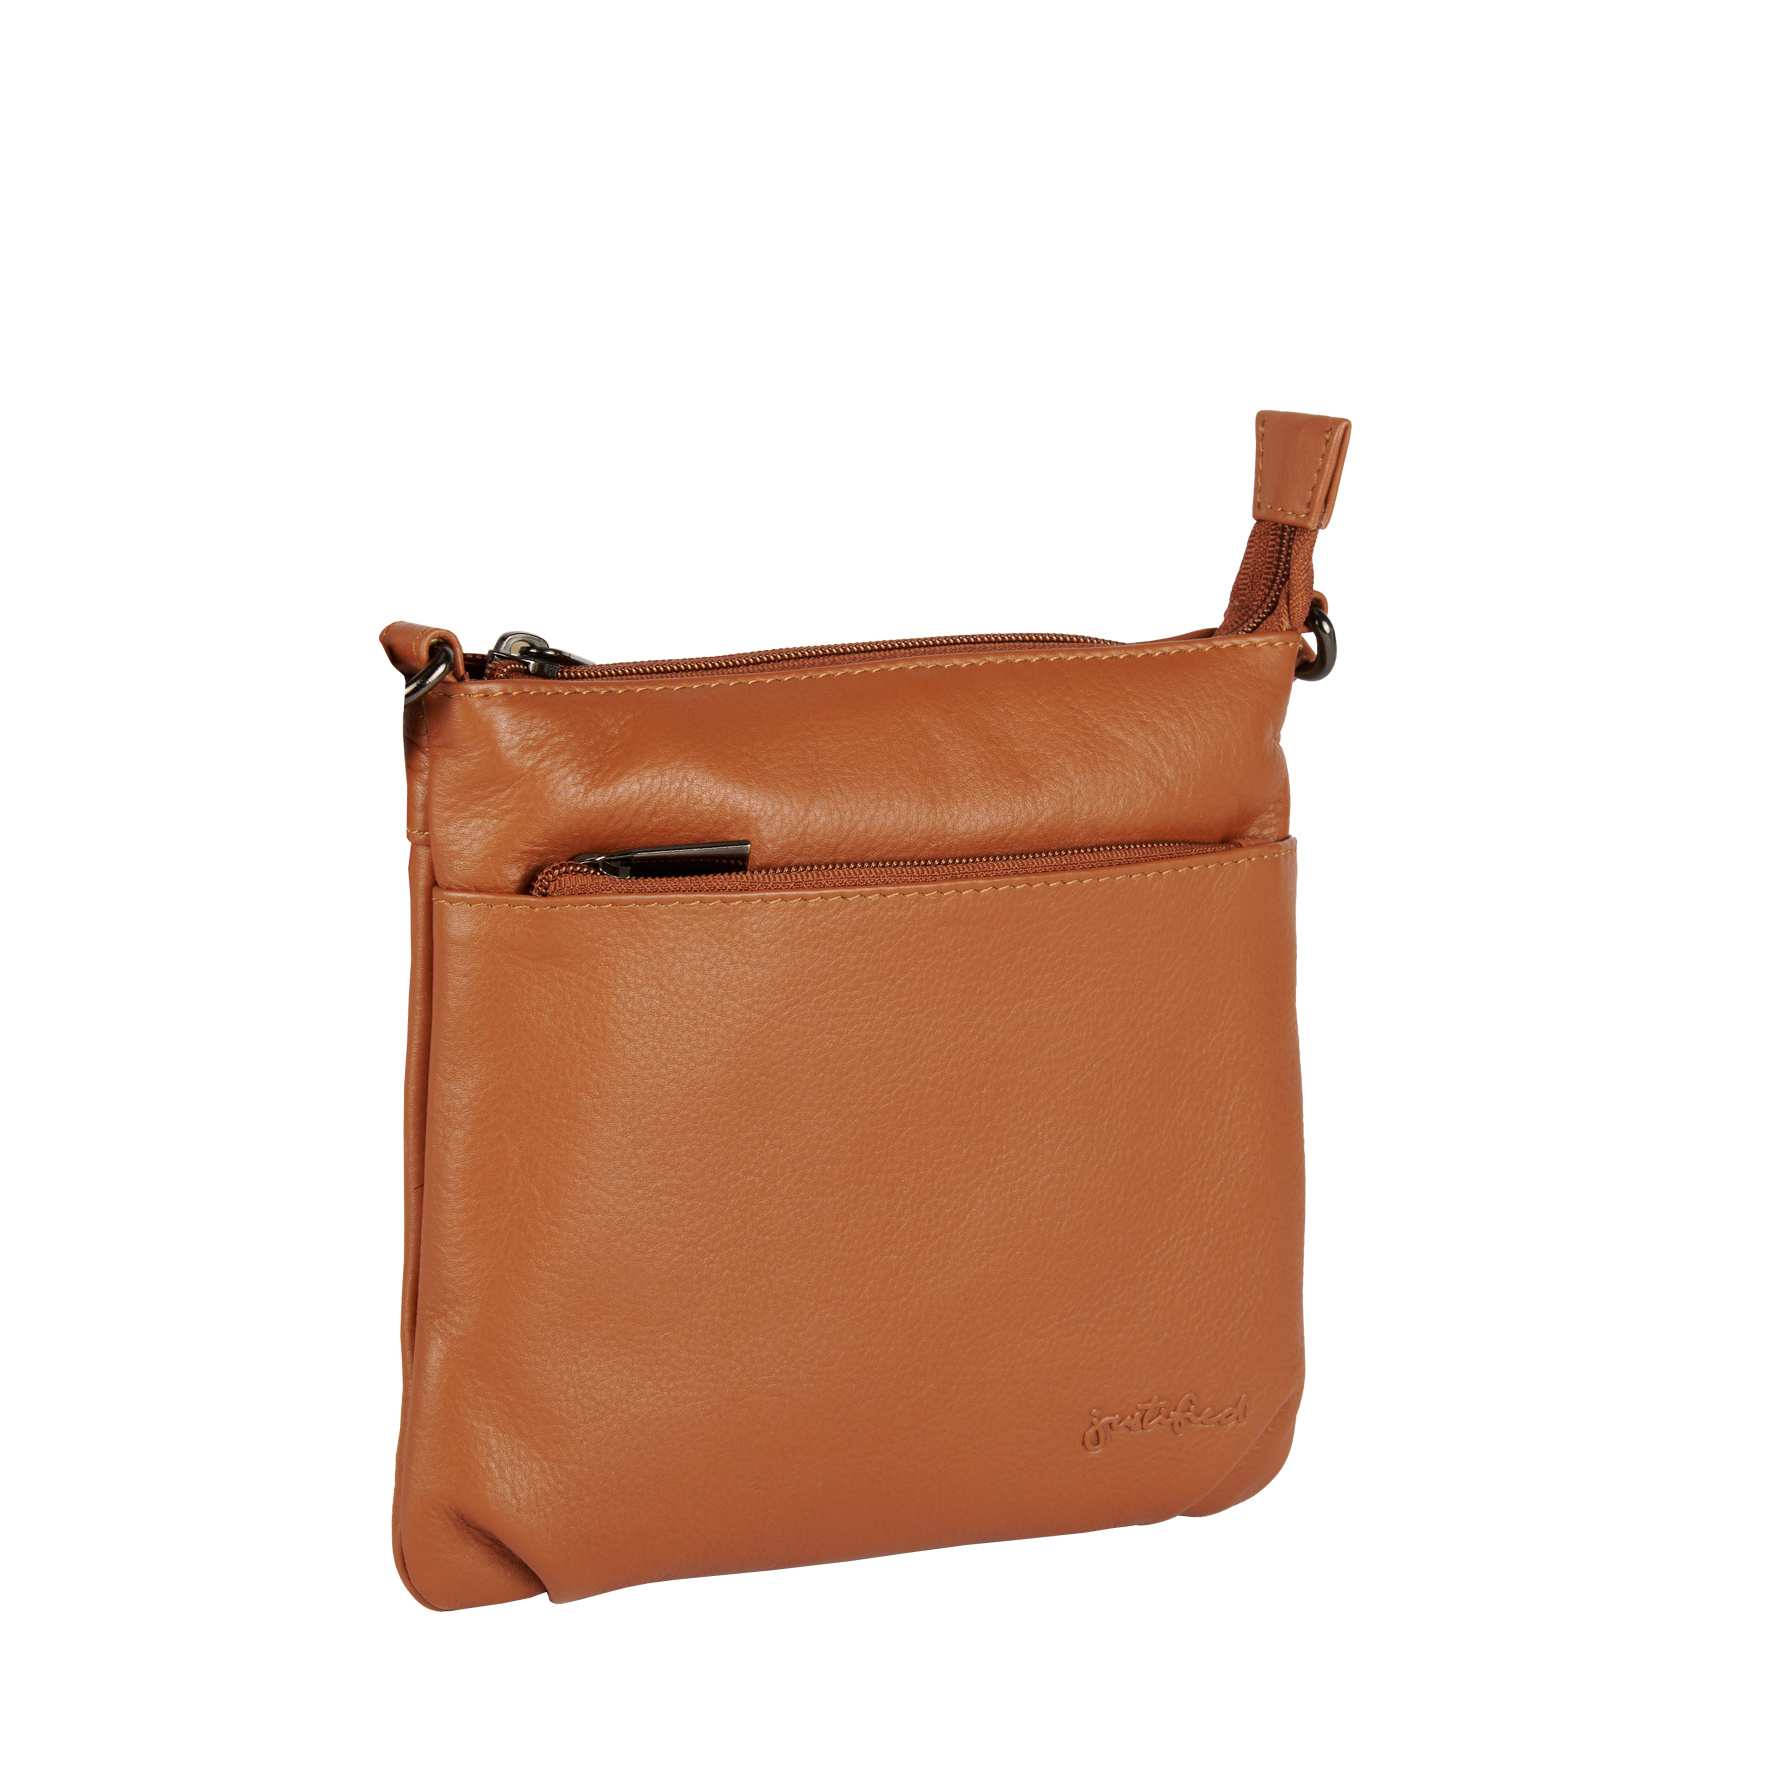 Justified Bags Justified Bags® Nappa III Shoulderbag Cognac